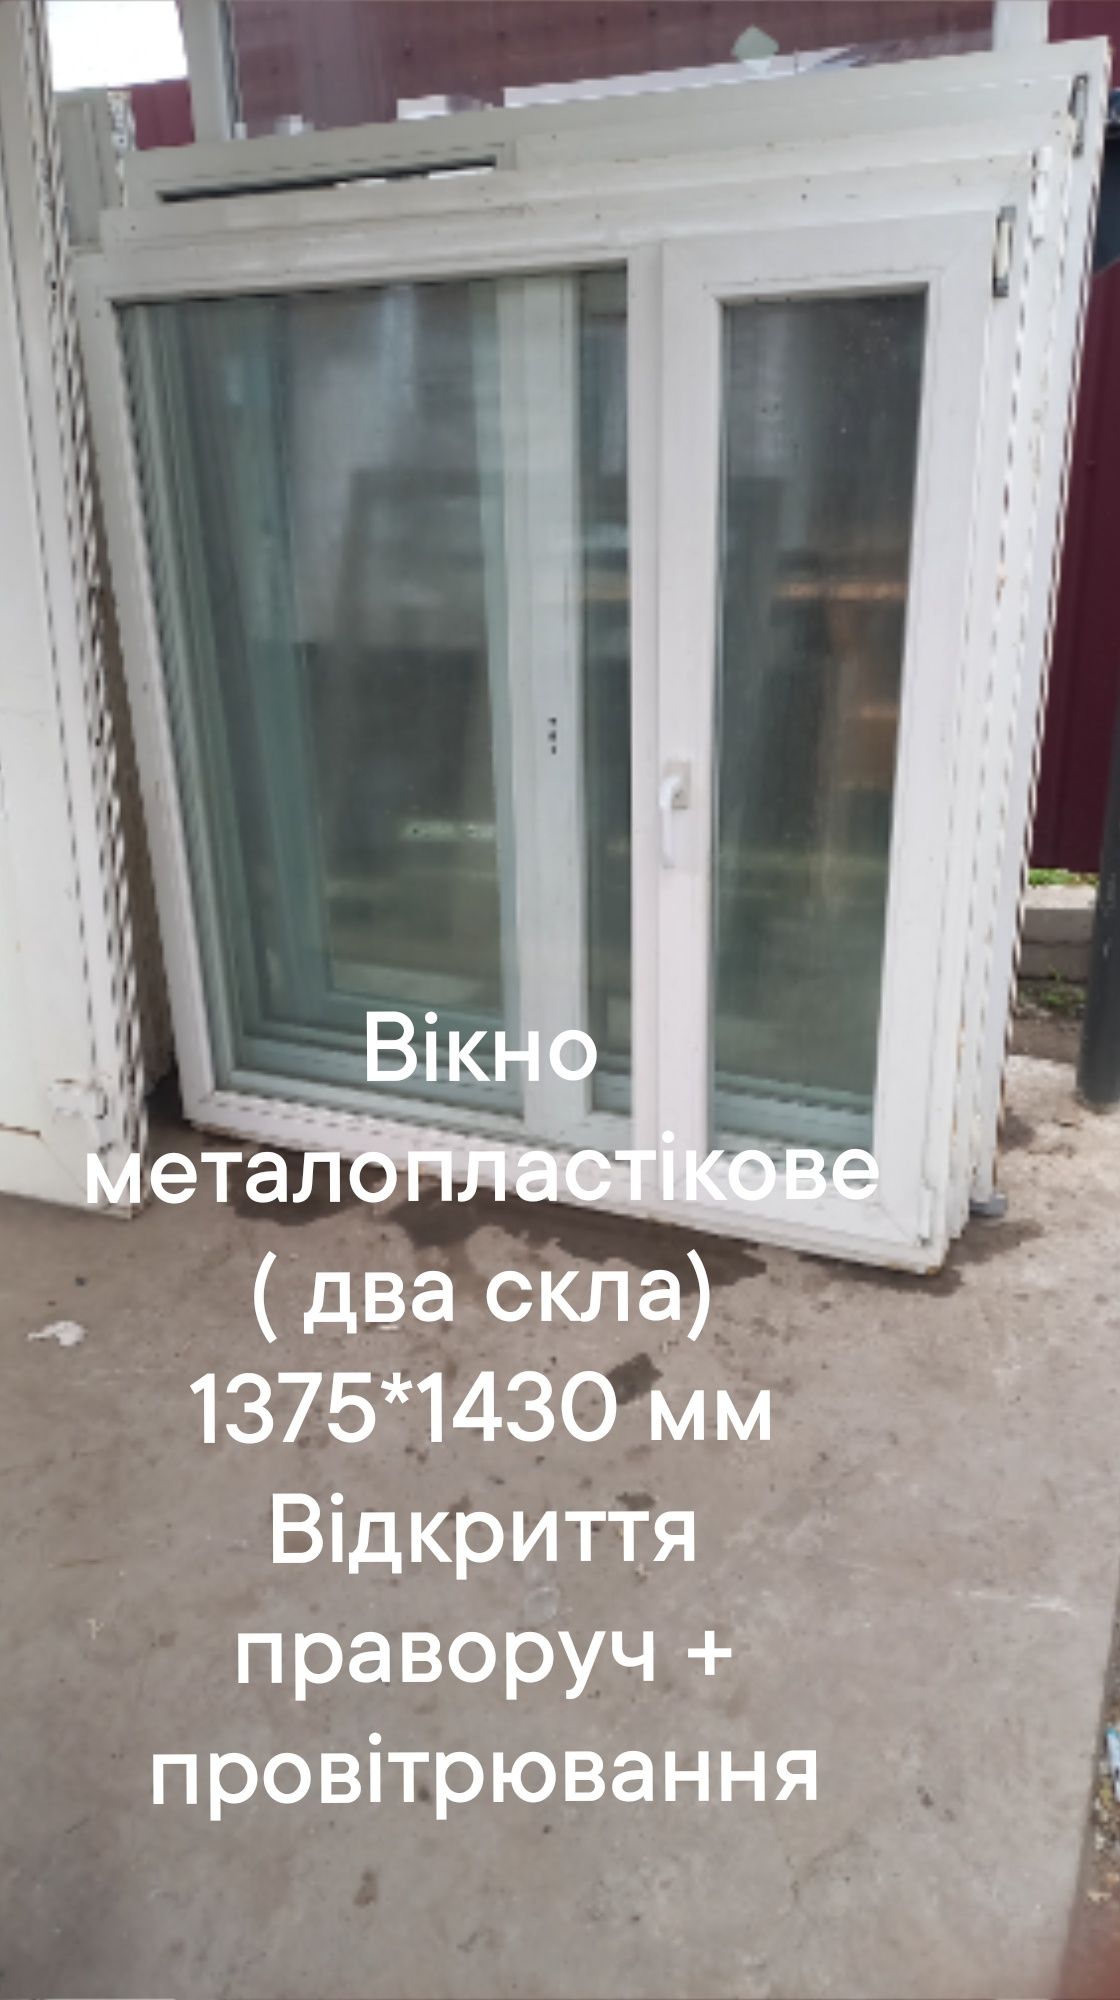 Окно / вікно б.у. 1300 *1430 мм ( два стекла) открытие вправо + провет